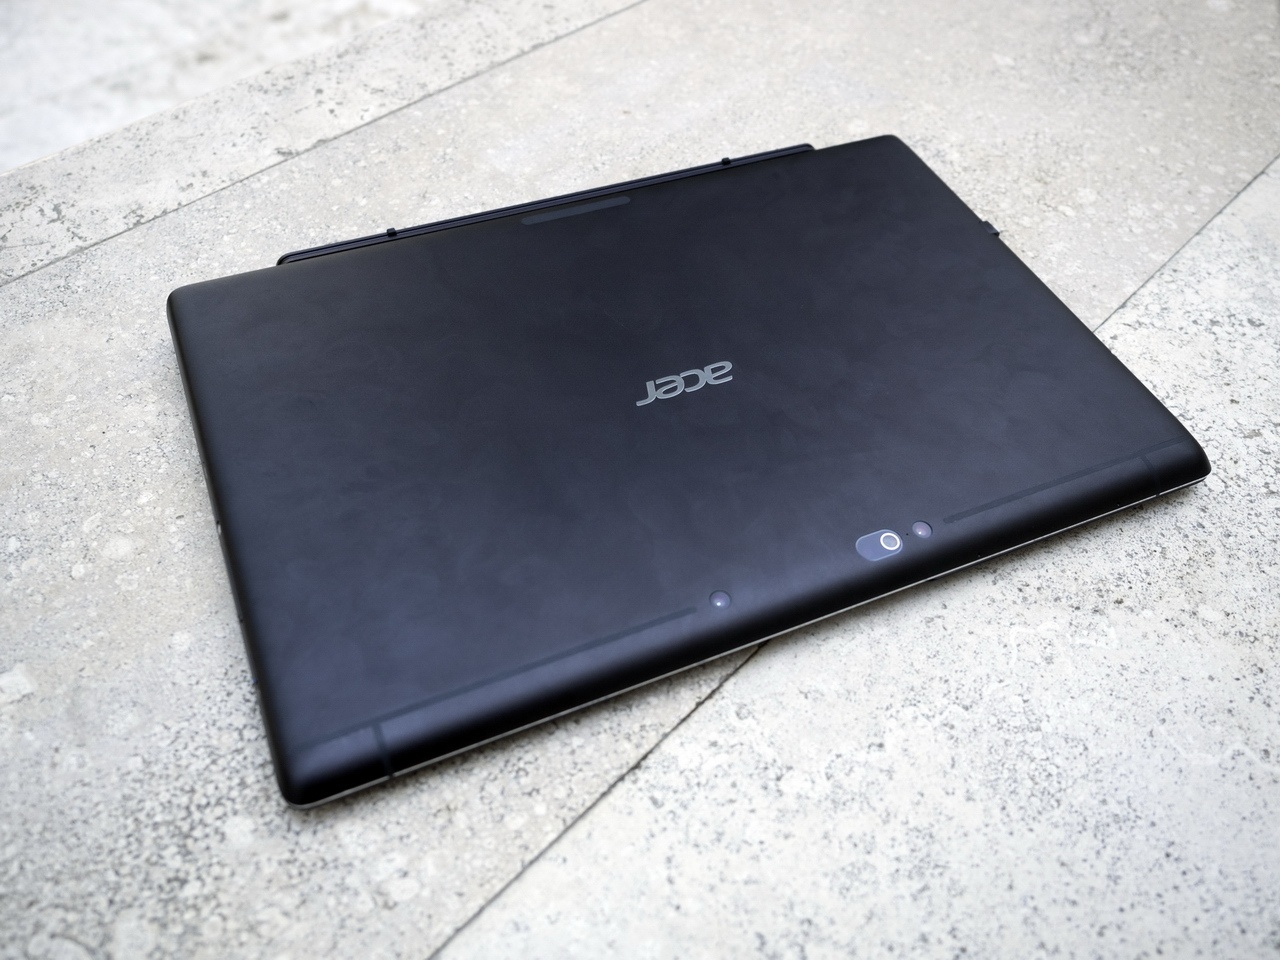 Acer на CES 2016: мониторы, планшеты, игровые ноутбуки и ультрамобильный трансформер - 5